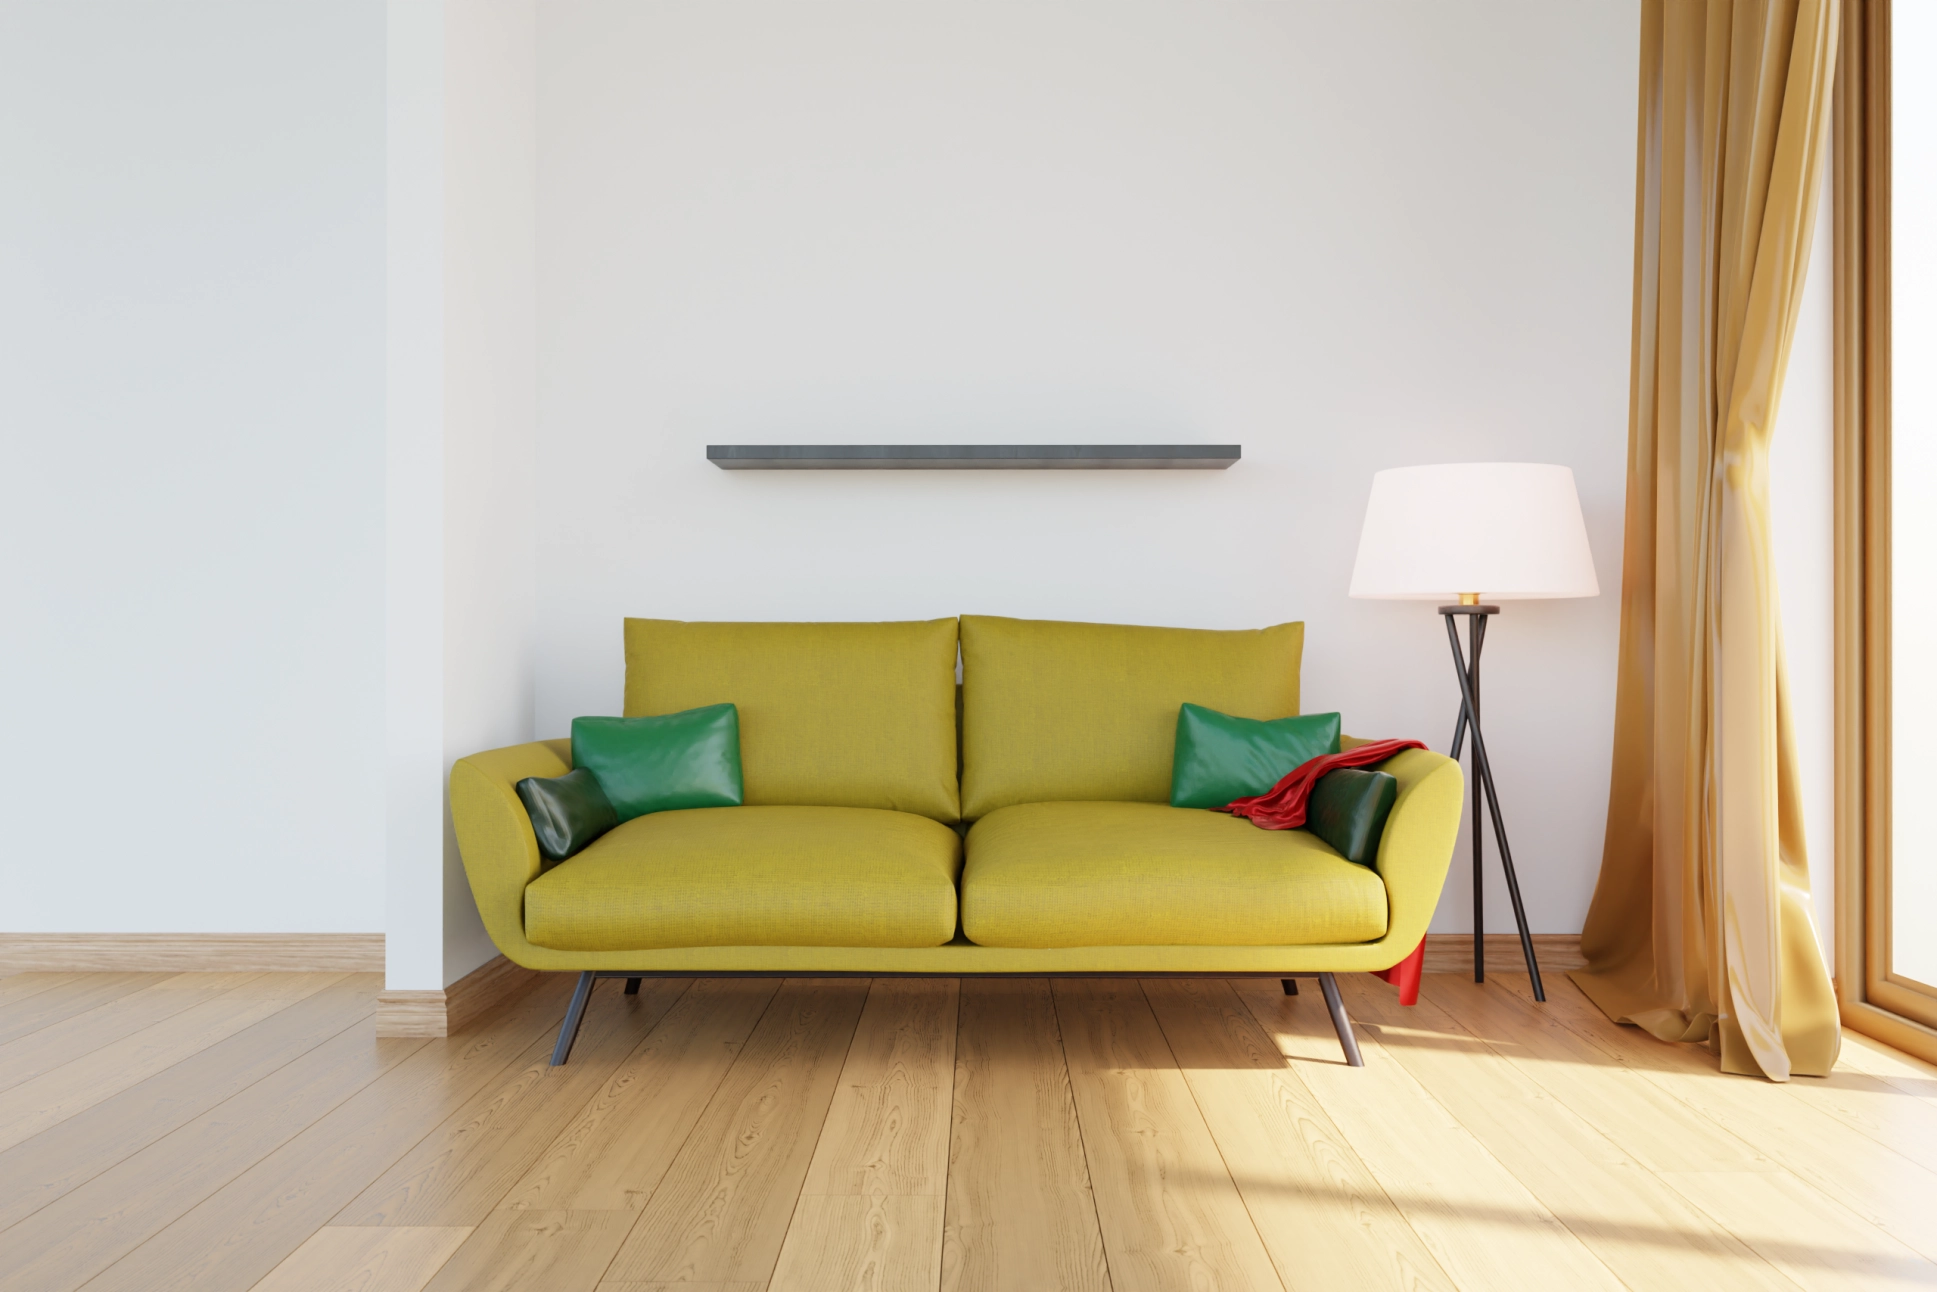 Sofa Modellierung in Blender